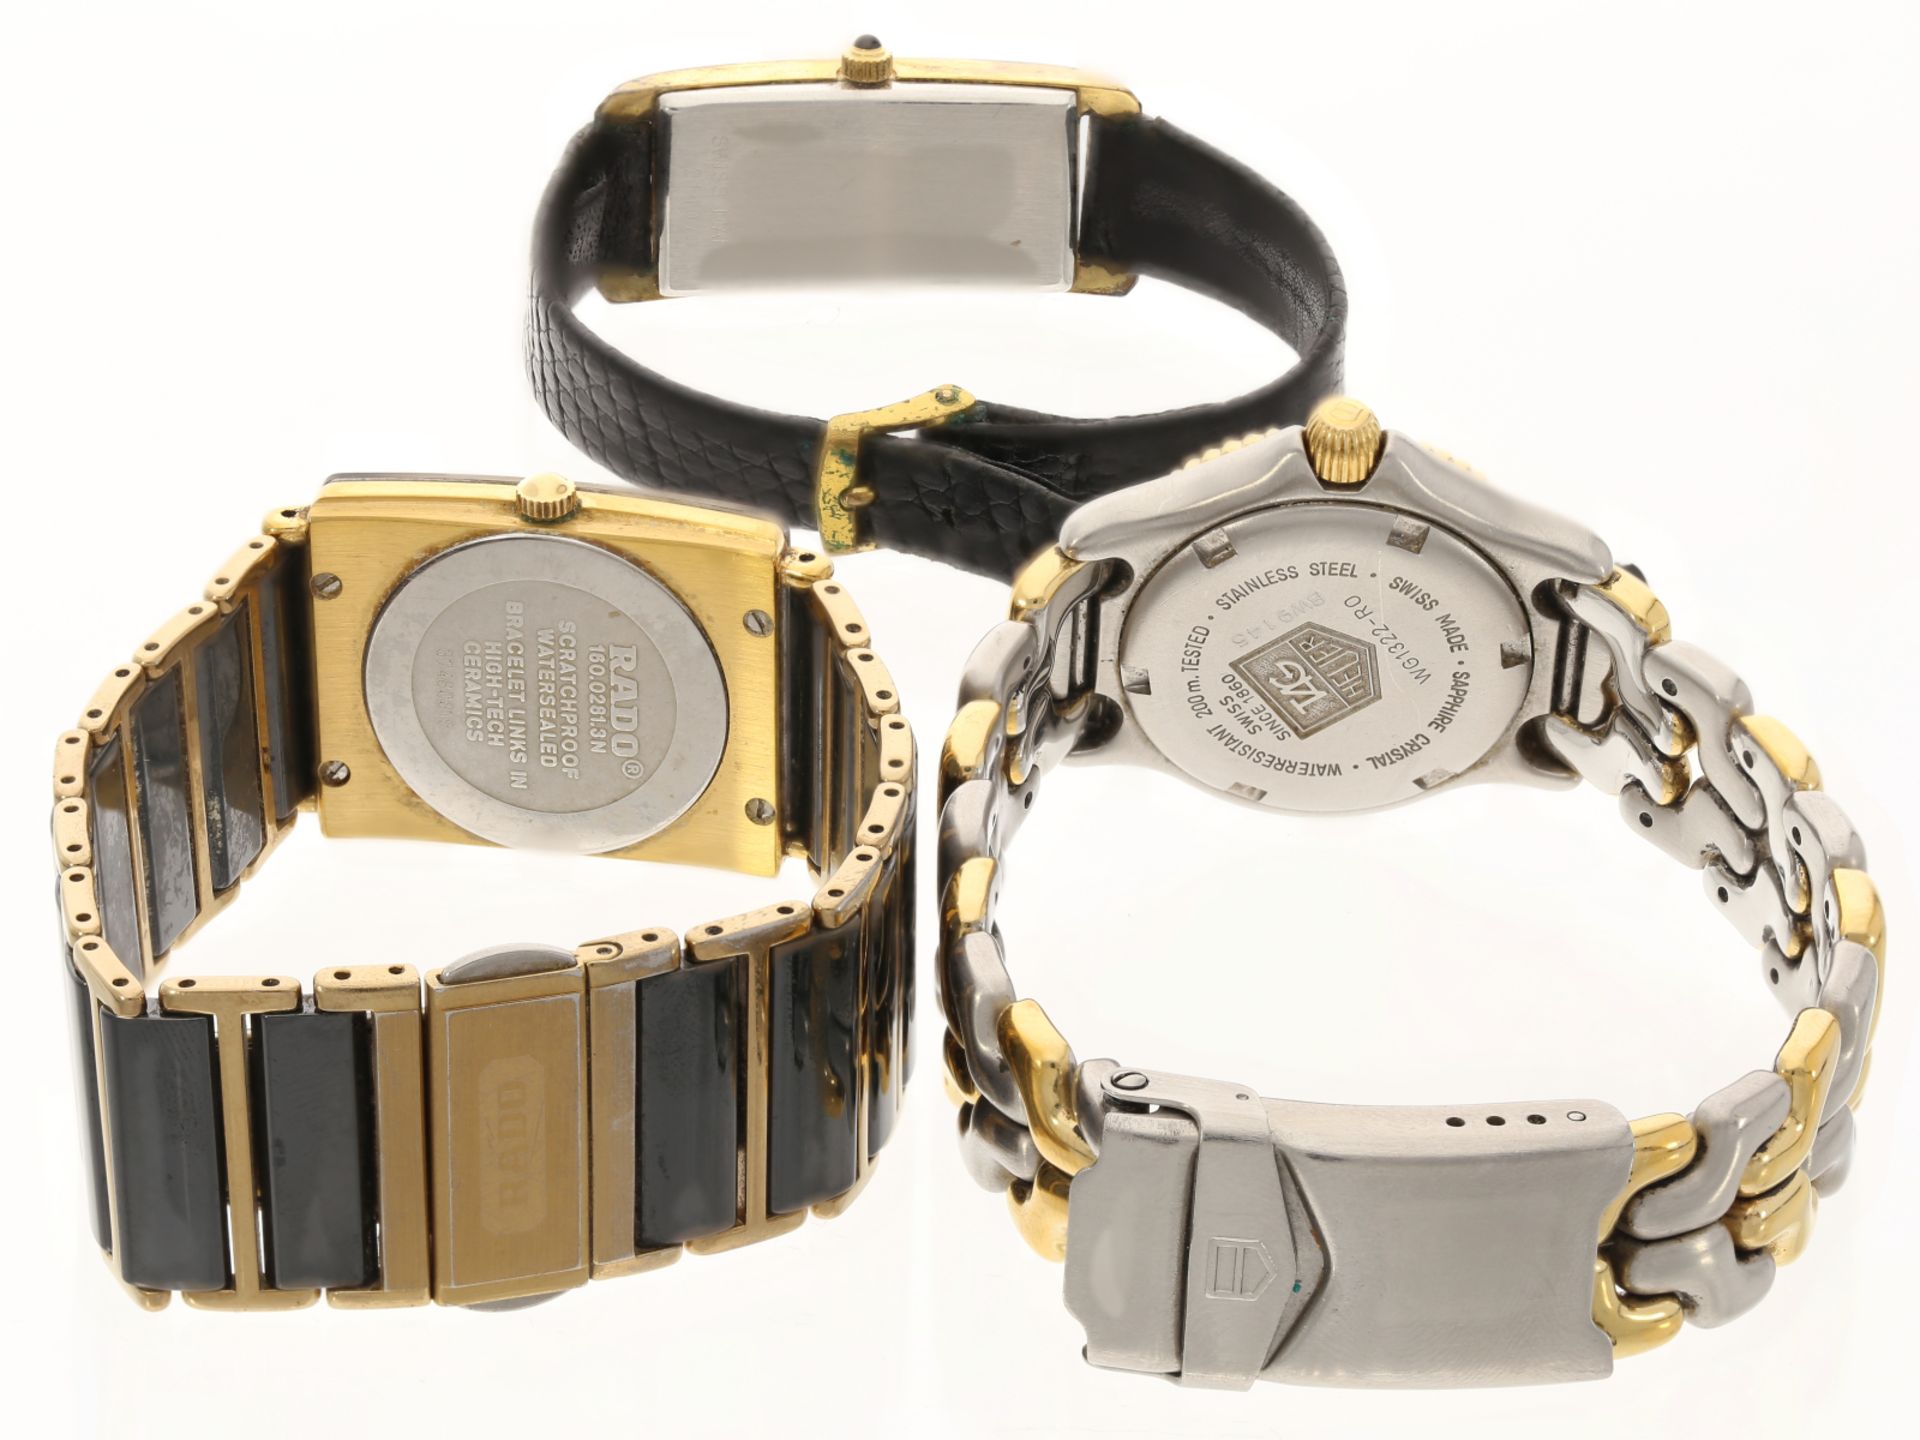 Konvolut bestehend aus drei Armbanduhren: Tag Heuer Professional Taucheruhr, Rado Diastar, Simon - Image 3 of 3